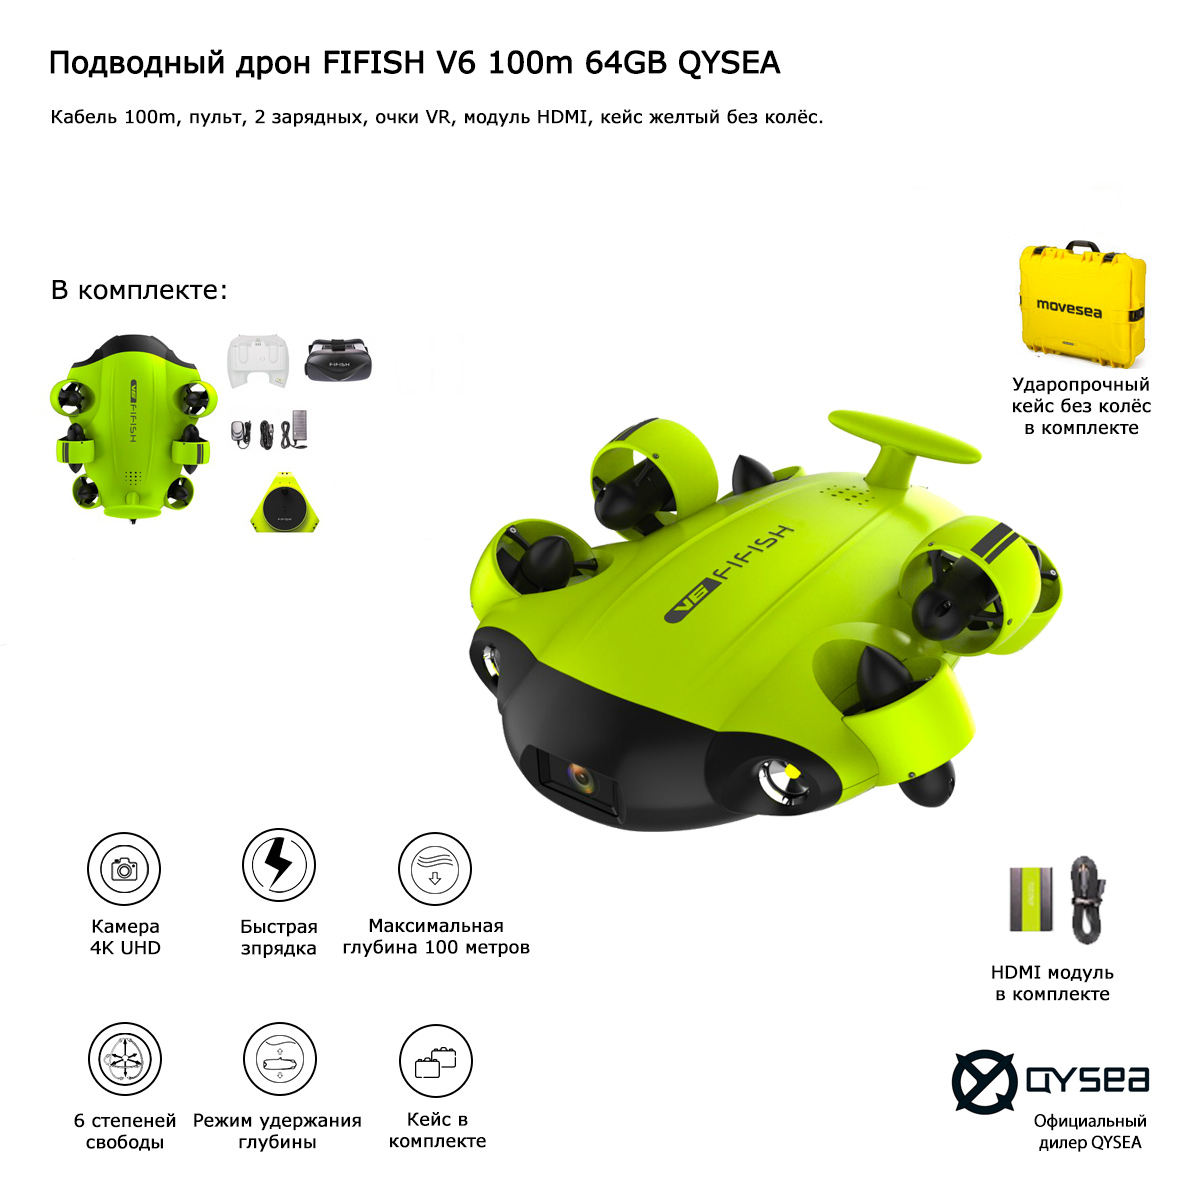 Подводный дрон FIFISH V6 100m 64GB QYSEA (Арт 847425)